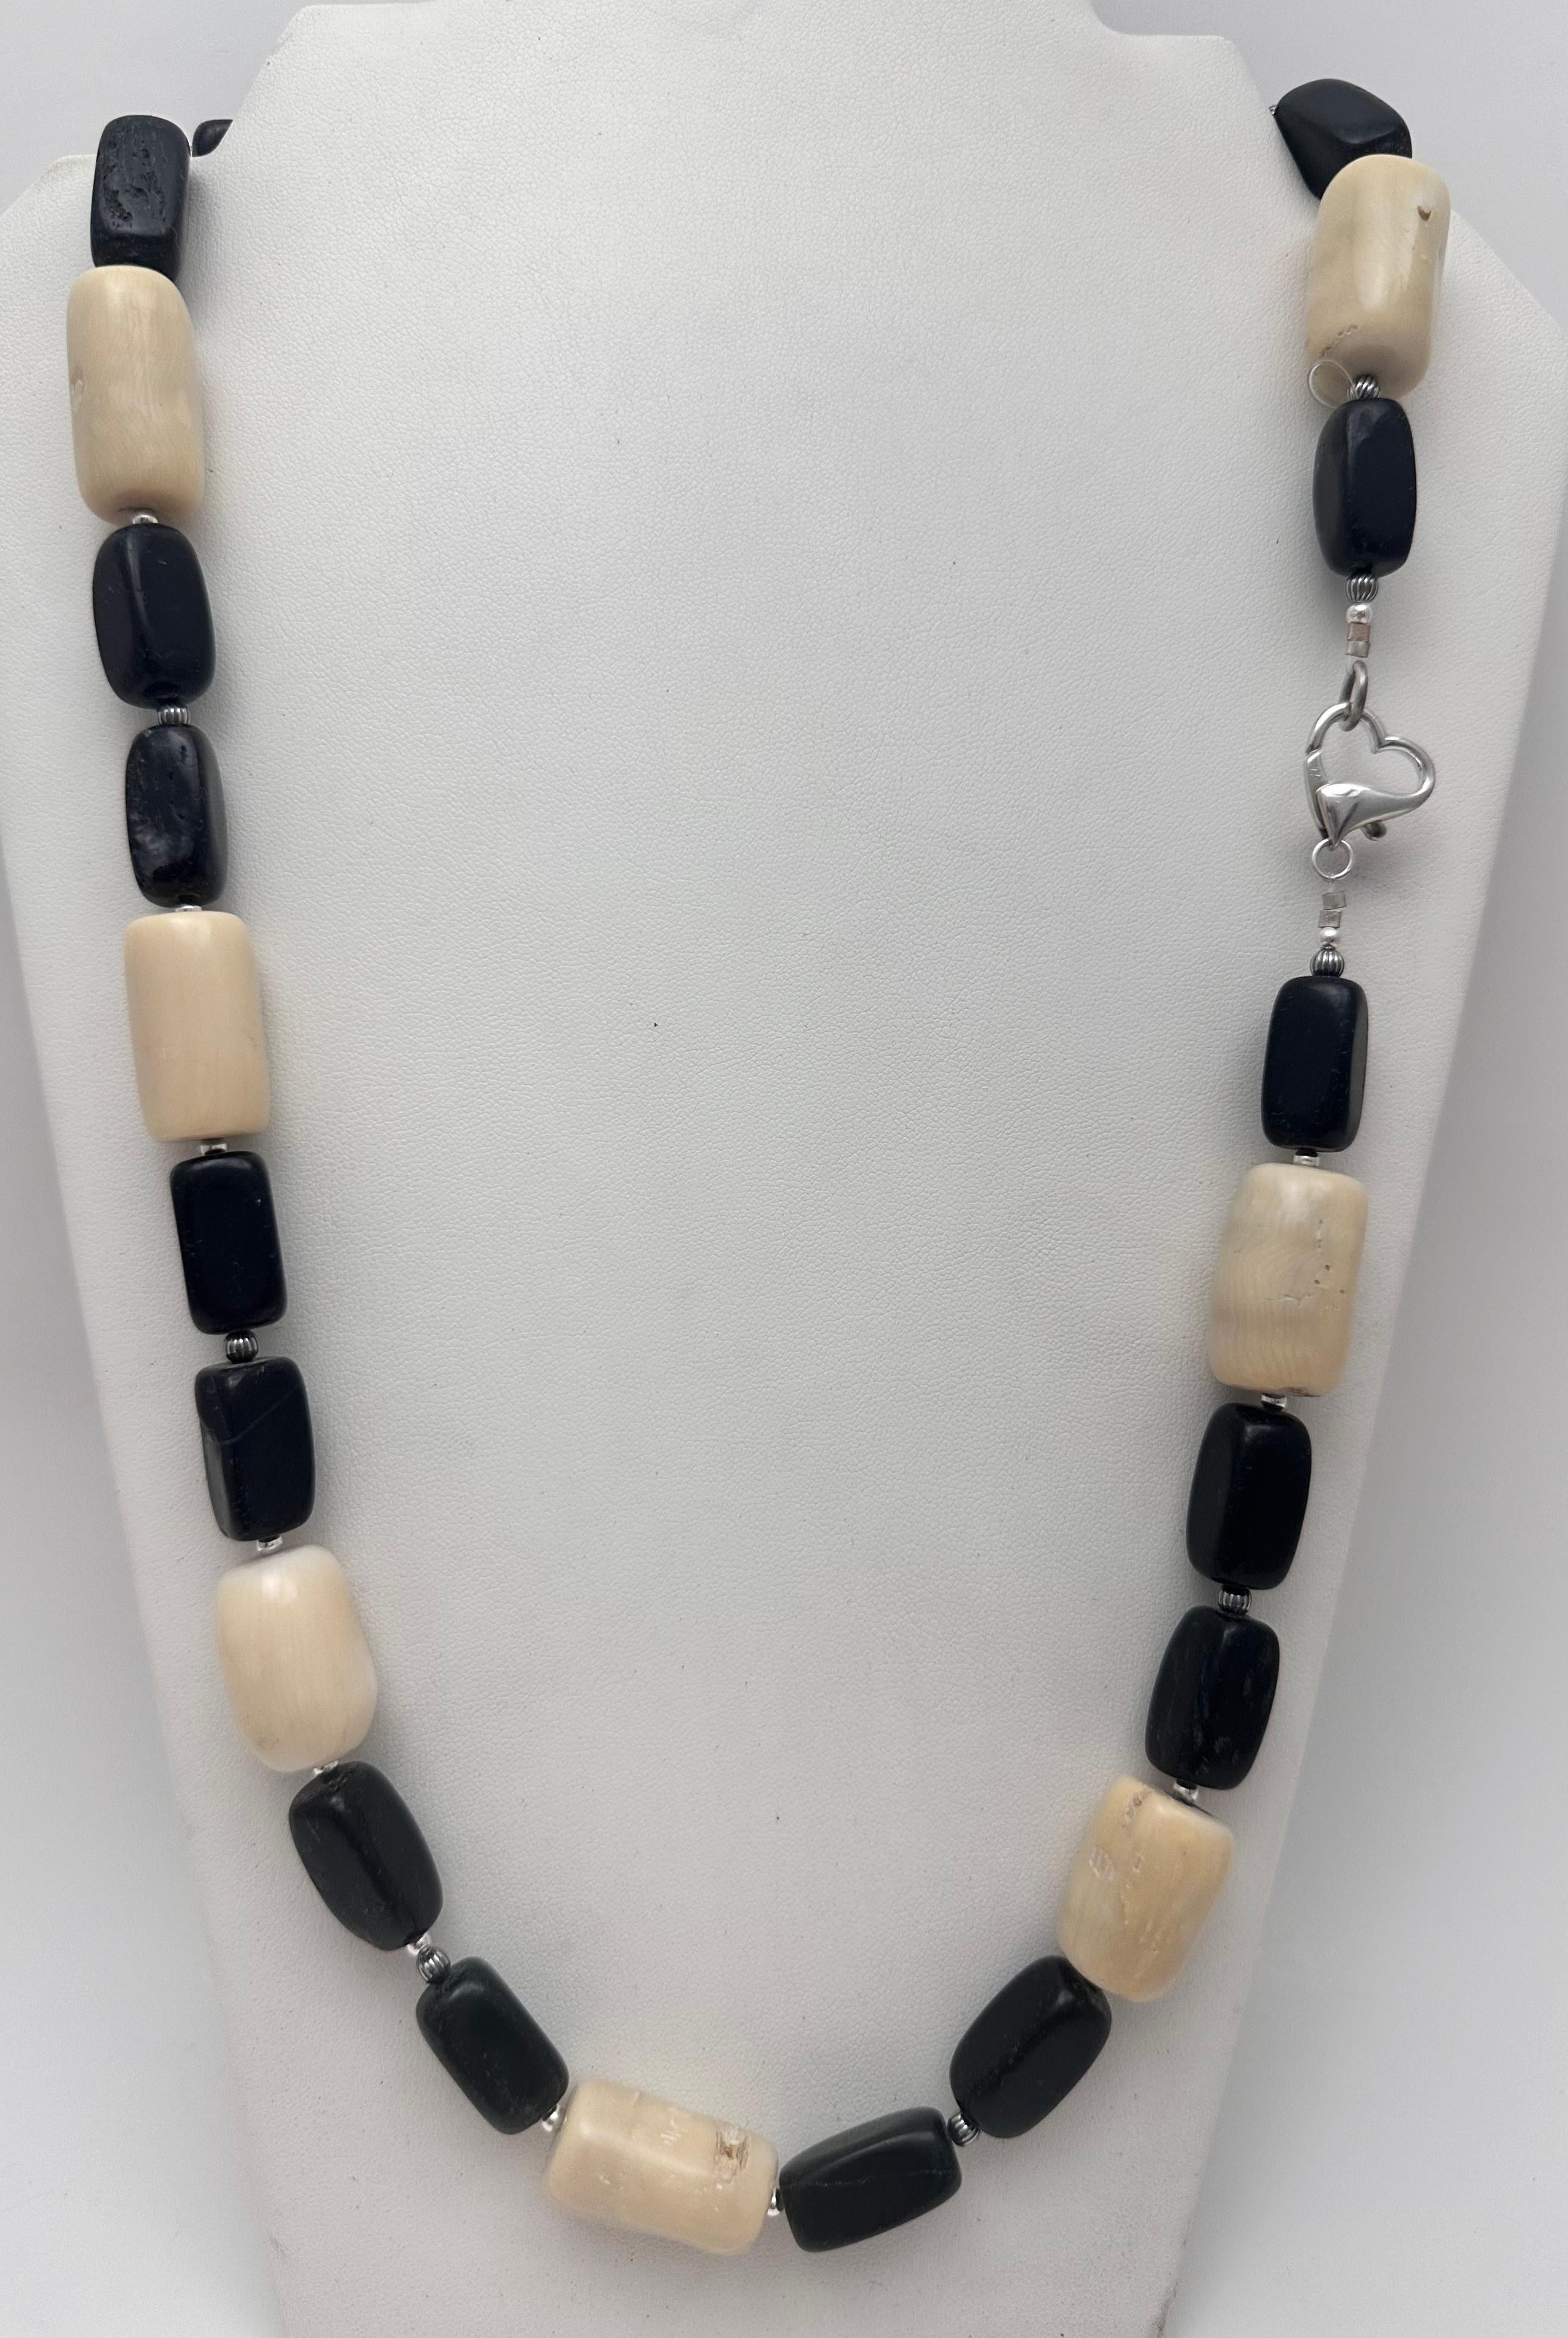 Diese wunderschöne handgefertigte Halskette ist aus hochwertigem Sterlingsilber (.925) gefertigt und verfügt über eine wunderschöne beigefarbene Korallenperle. Die Halskette ist mit schwarzen Perlen verziert und hat einen herzförmigen